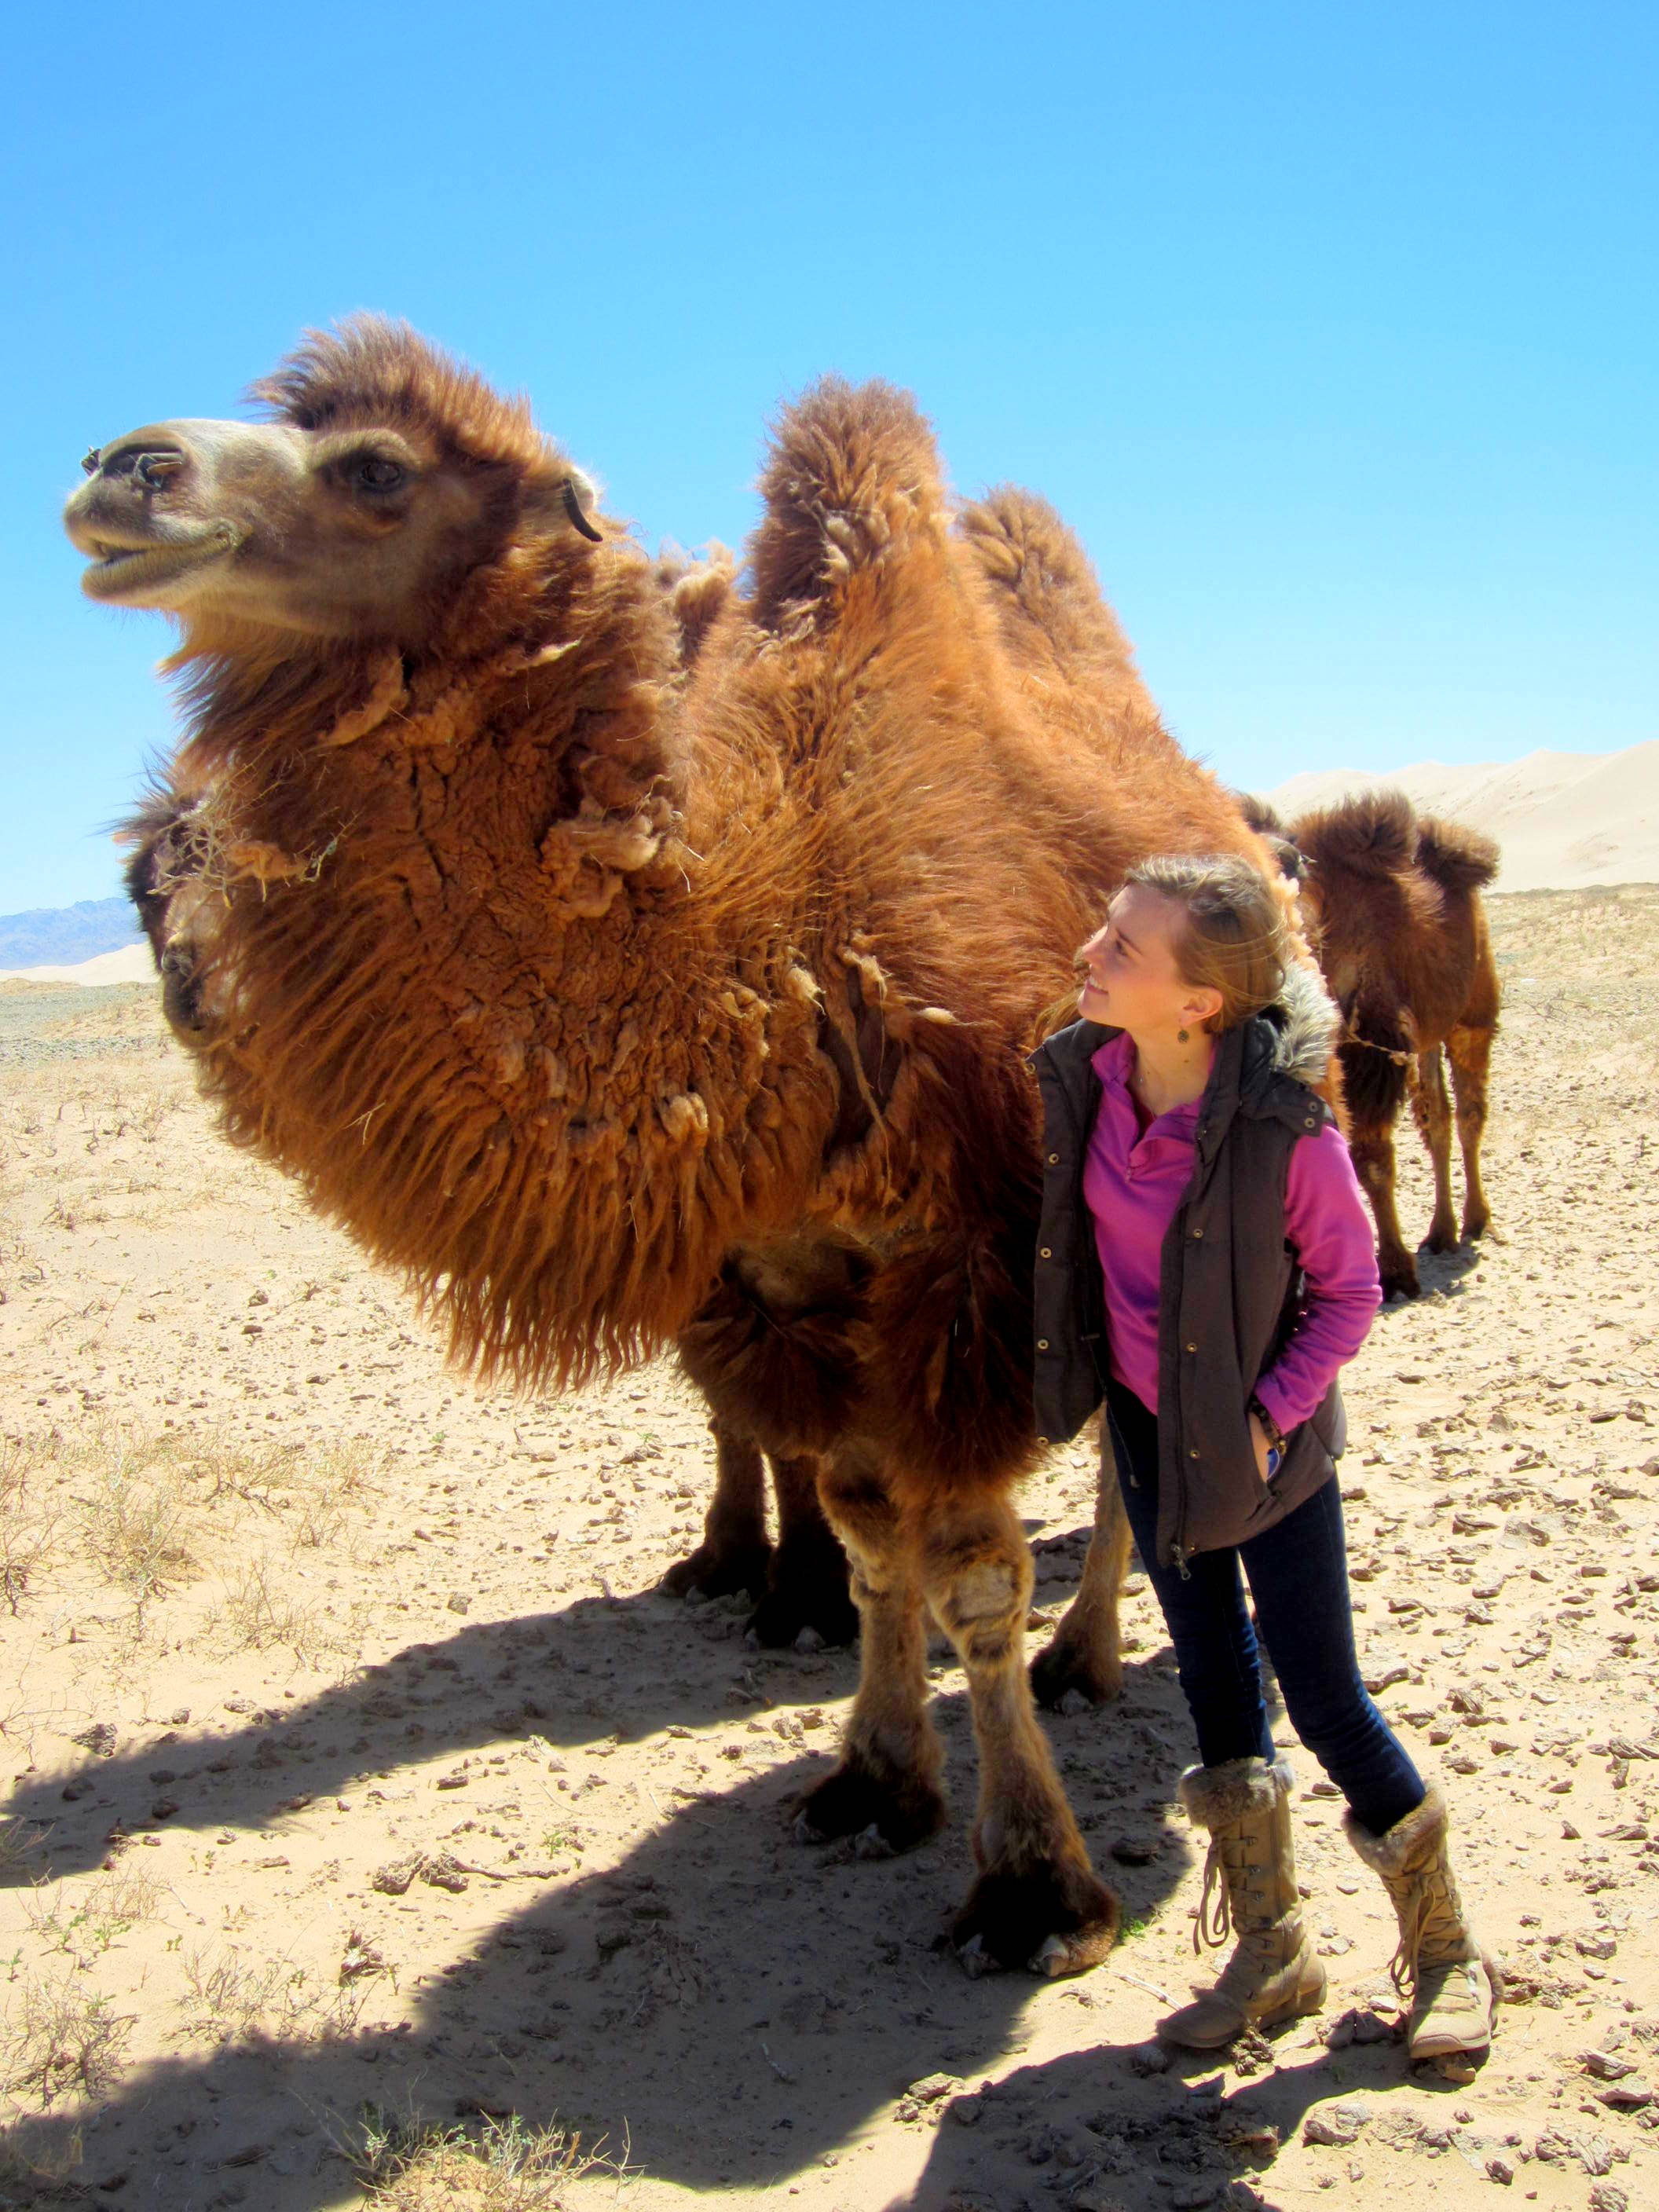 Trying to befriend the camels in Khongoriin Els, Gobi Desert